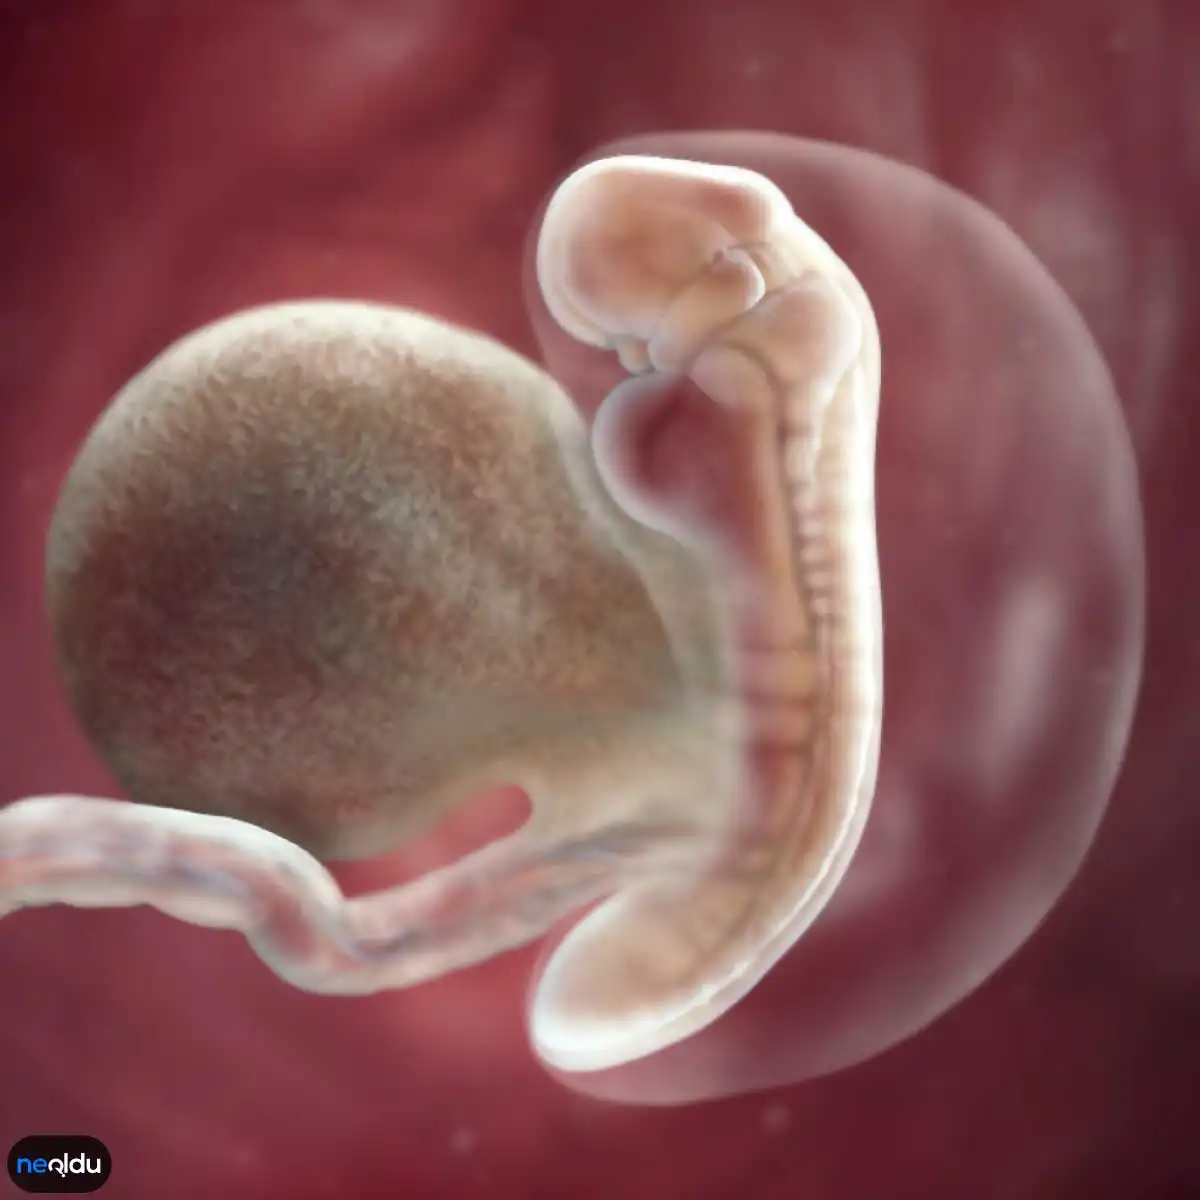 6 неделя что происходит с малышом. Зародышюш на 6 недели беременности. Эмбрион на 5 неделе беременности. Плод на 4-5 неделе беременности.